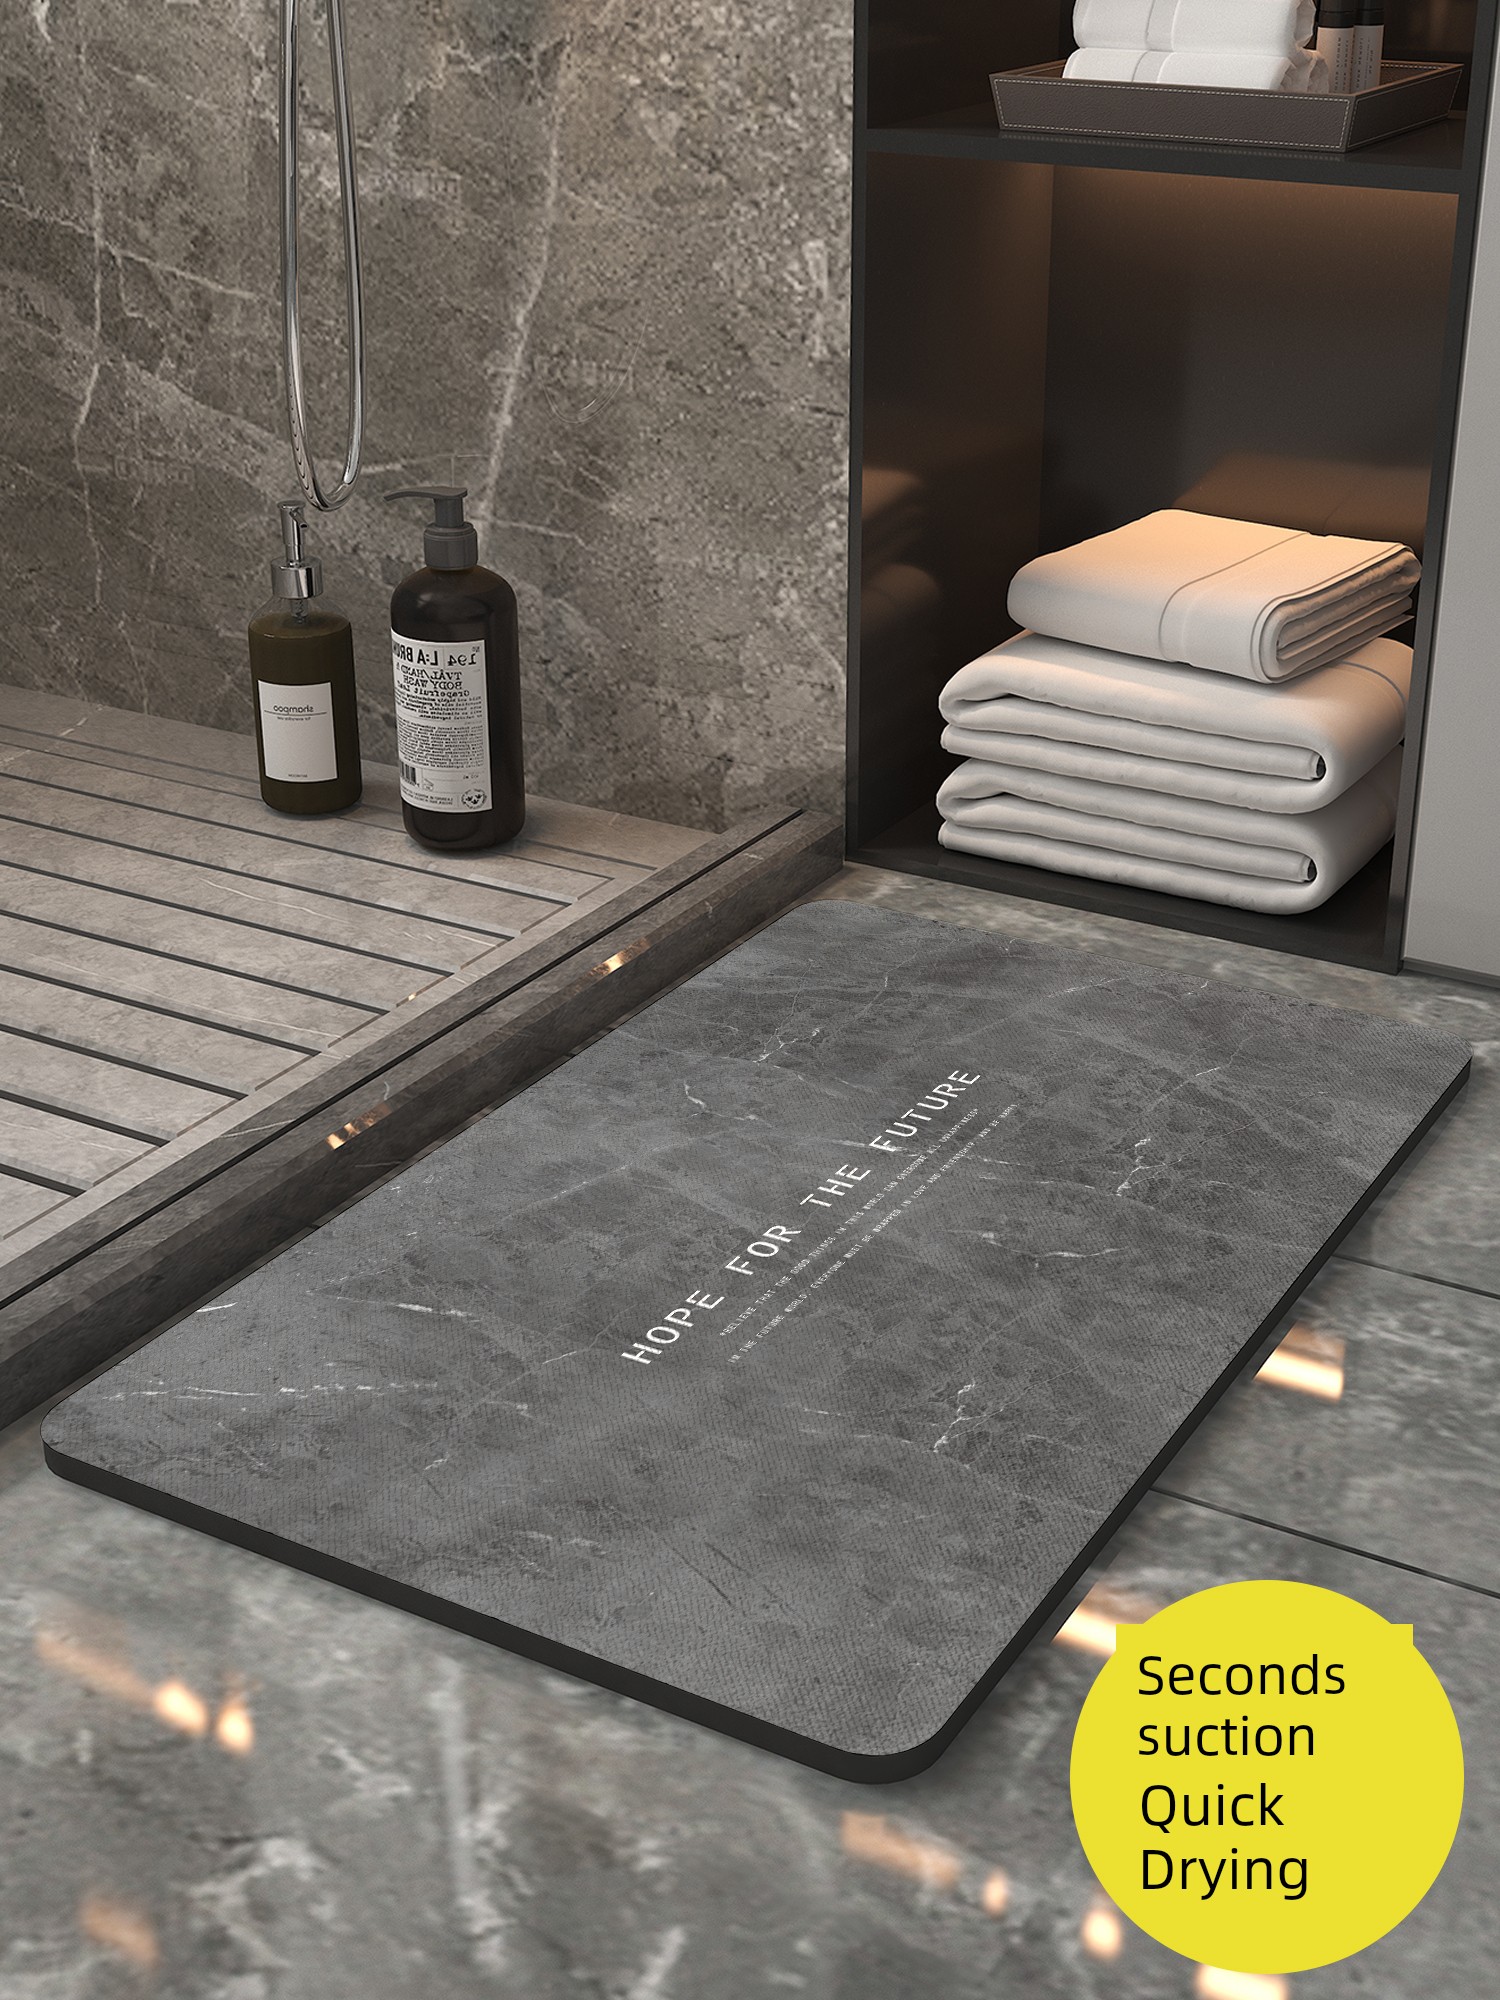 衛浴地墊珪藻土超吸水加厚40mm防滑耐用多色多款式可選適用於衛生間浴室廚房